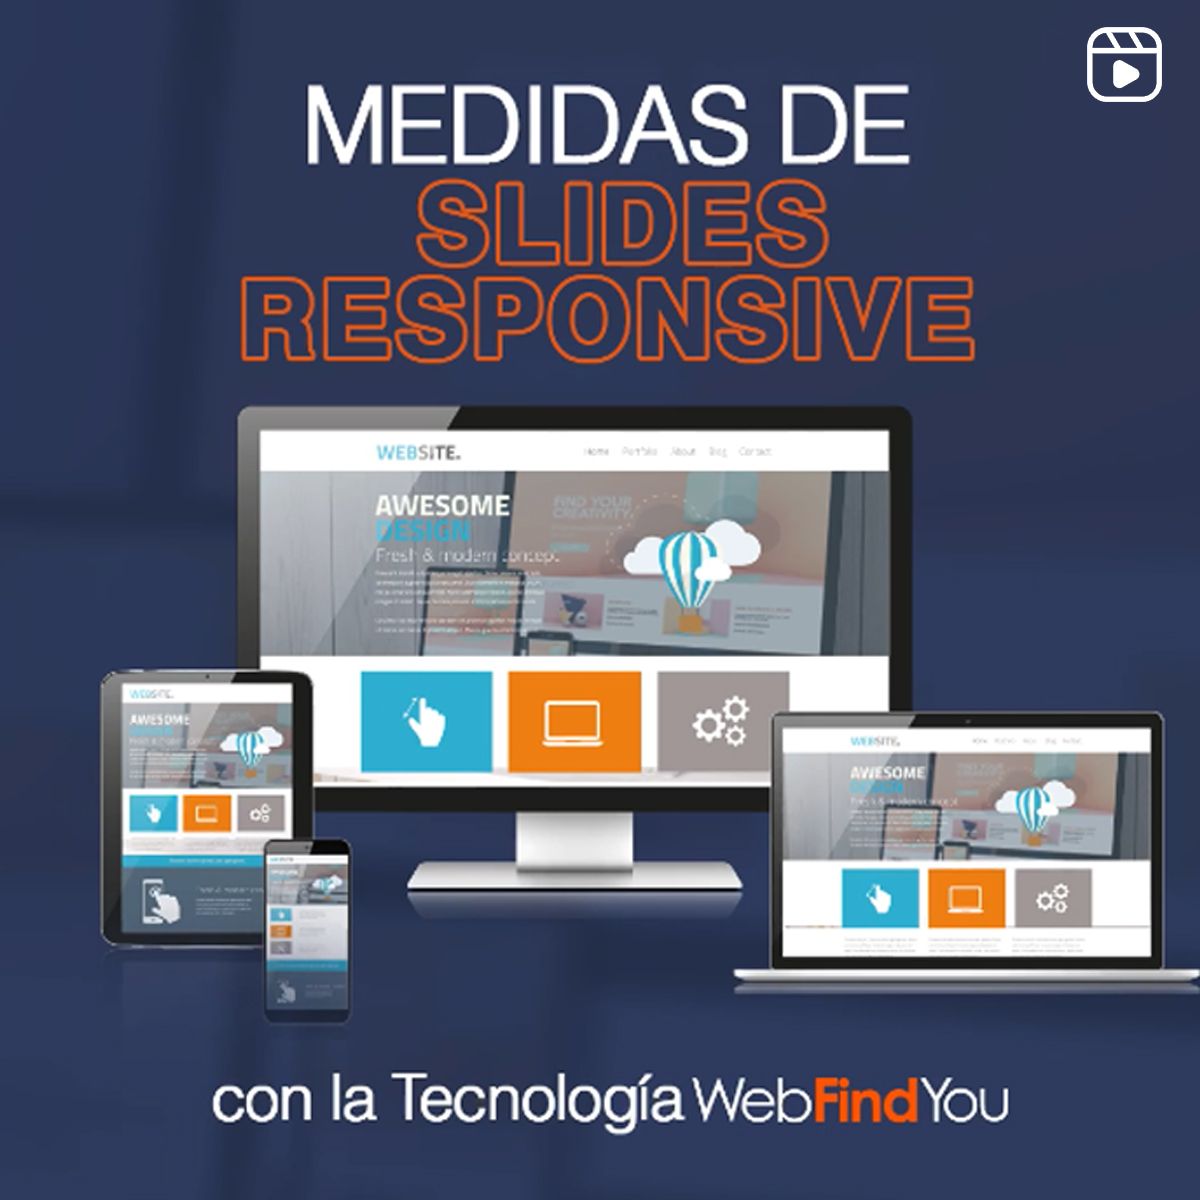 Medidas de slides responsive con la Tecnología WebFindYou